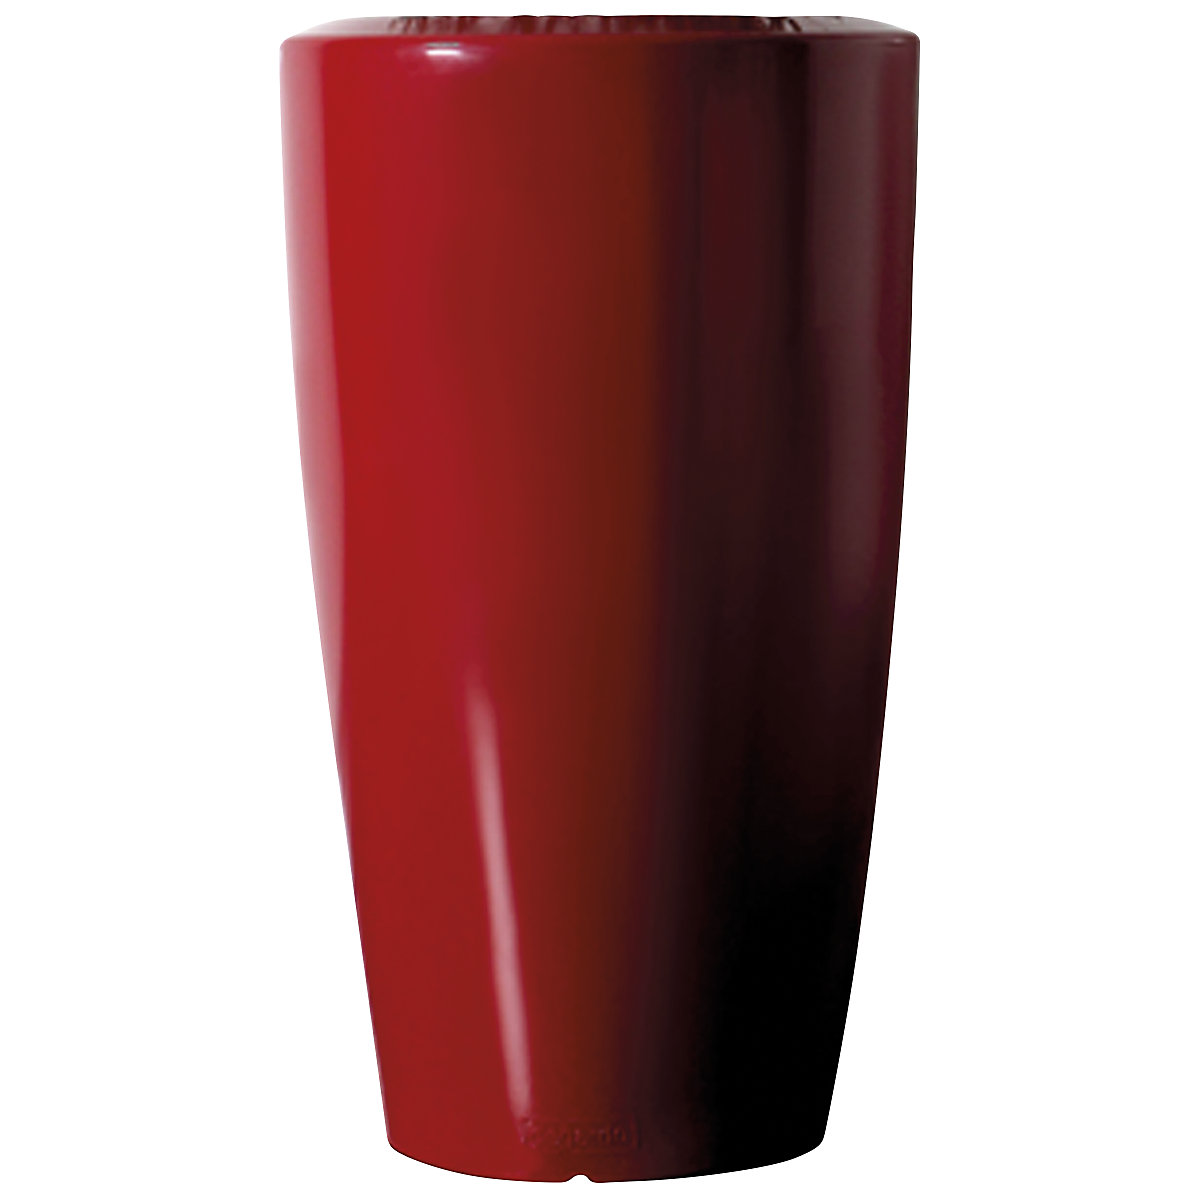 Kvetináč – DEGARDO, ROVIO III, v x š x h 1100 x 600 x 600 mm, rubínová červená-6